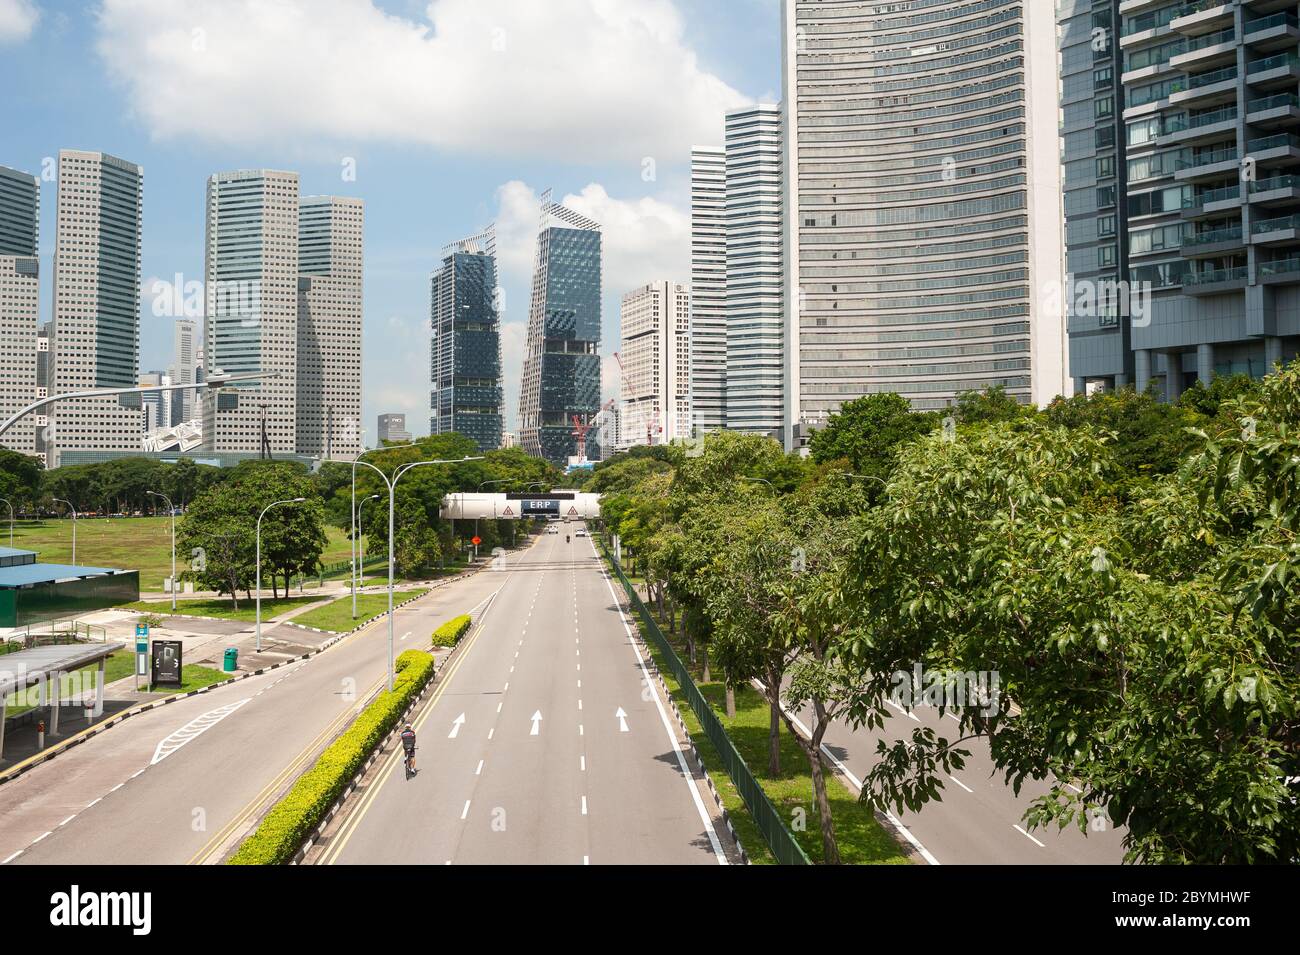 05.05.2020, Singapur, Singapur - leere Straßen und kaum Verkehr im Stadtzentrum während der Sperrung durch die Koronakrise (Covid-19). Stockfoto